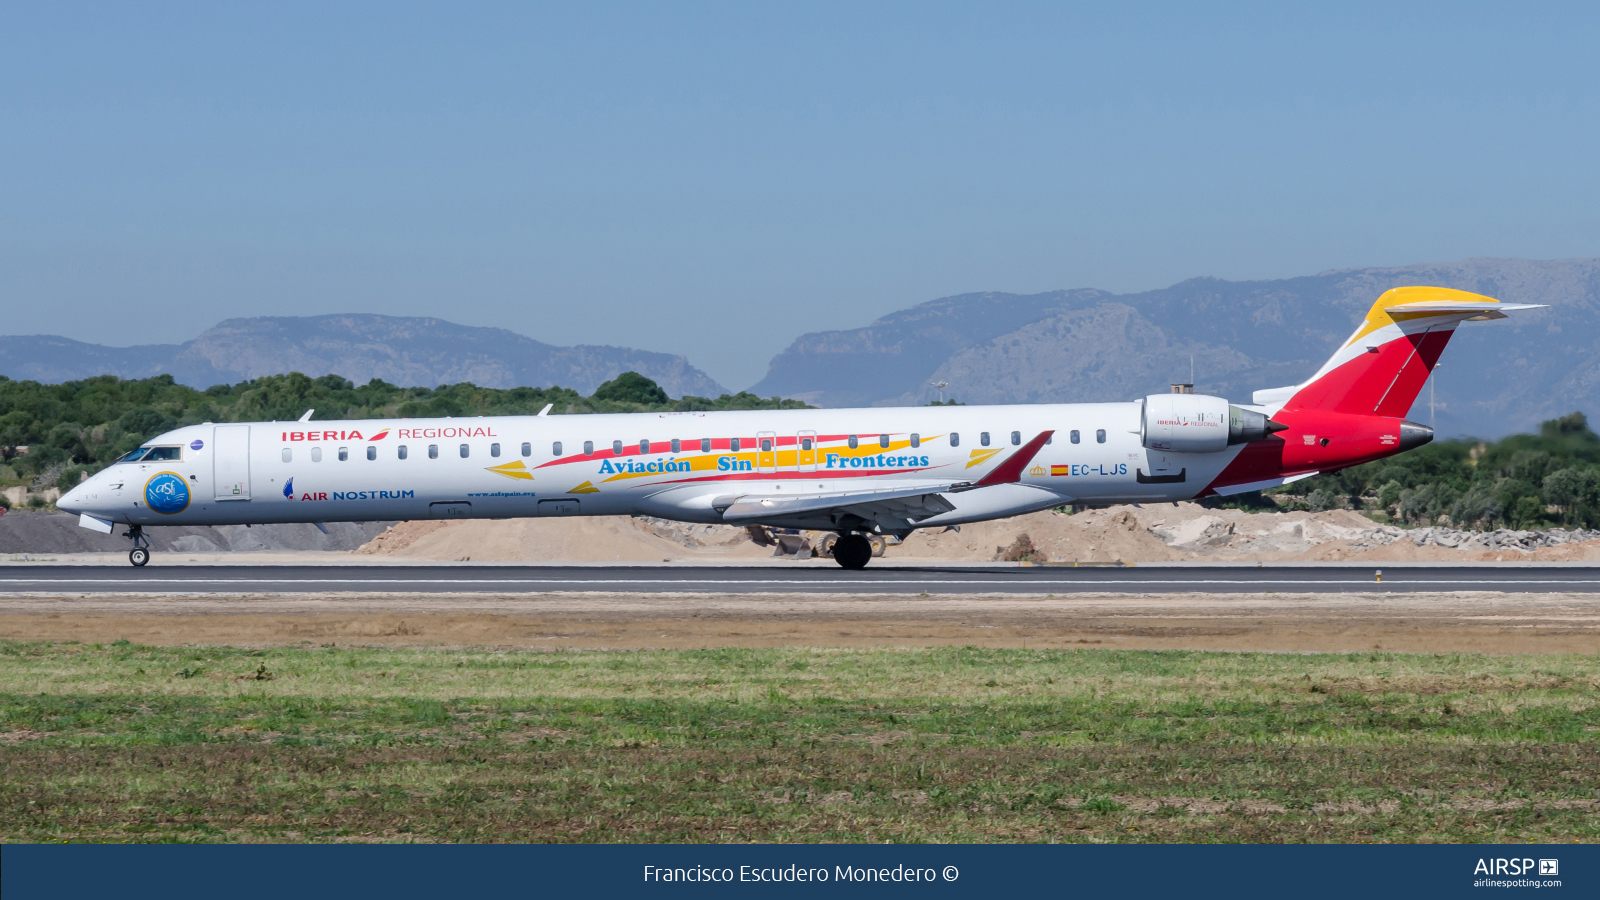 Air Nostrum Iberia Regional  Mitsubishi CRJ-1000  EC-LJS